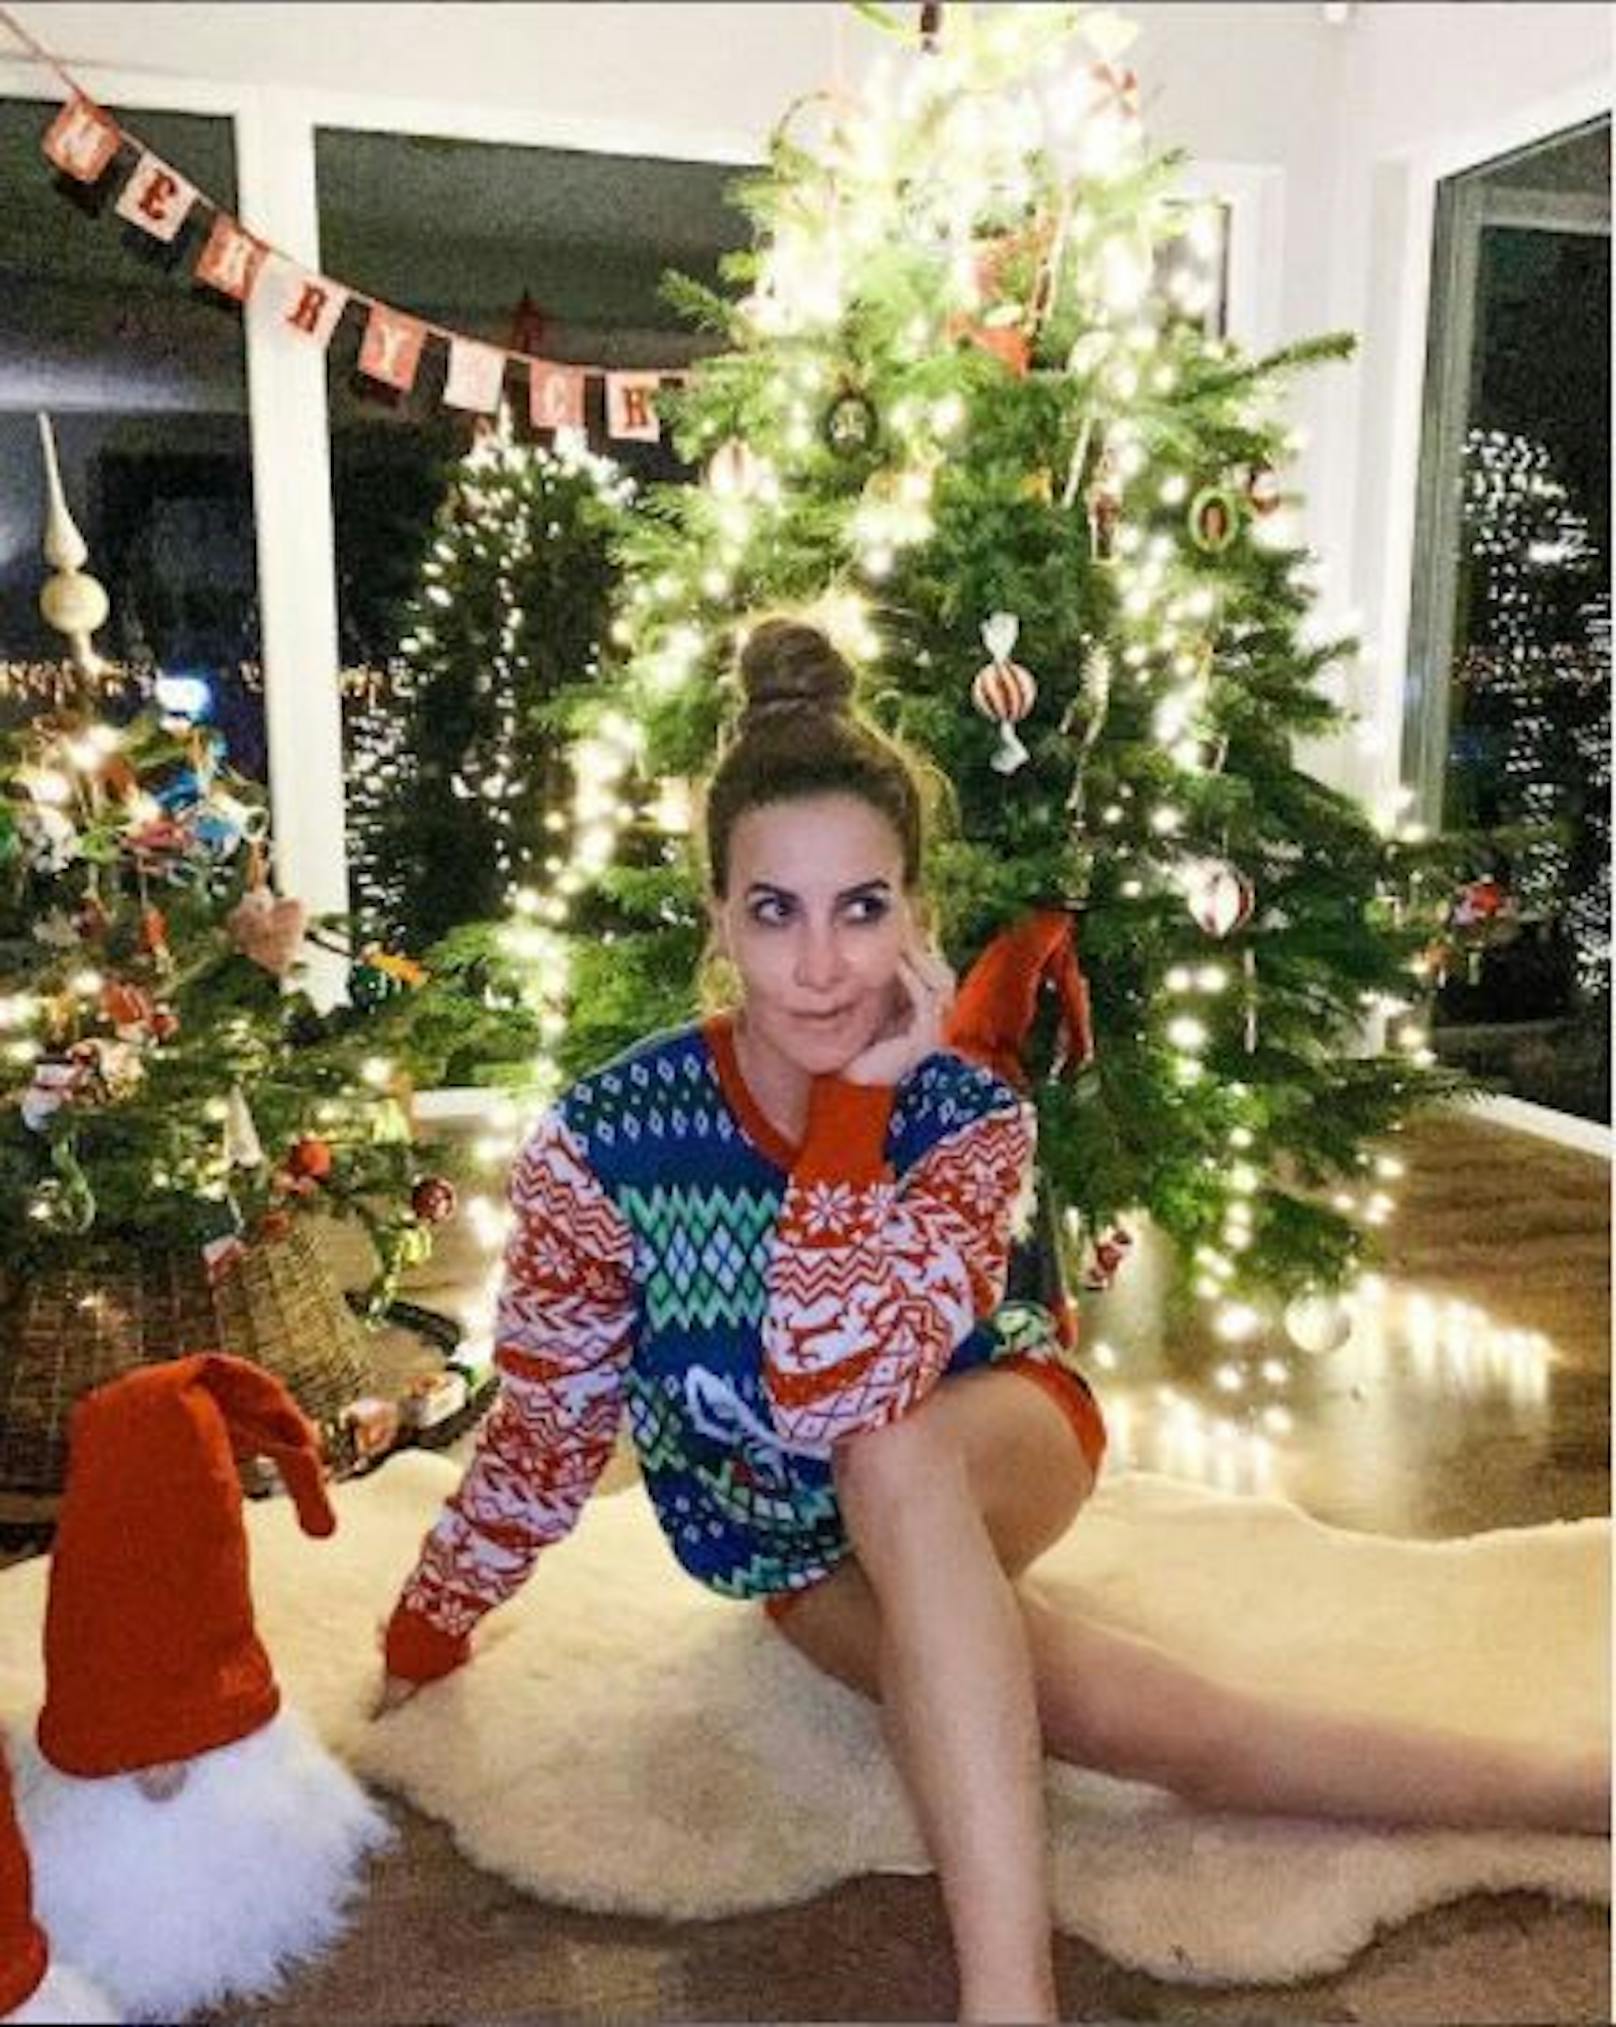 26.12.2020: Schauspielerin <strong>Charlotte Würdig</strong> platziert sich vor ihrem Christbaum zwar auf einem wärmenden Fell, hat&nbsp; aber dabei ganz offensichtlich auf ihr Höschen vergessen. "Lieber Weihnachtsmann, definiere 'gut", fordert sie frech.